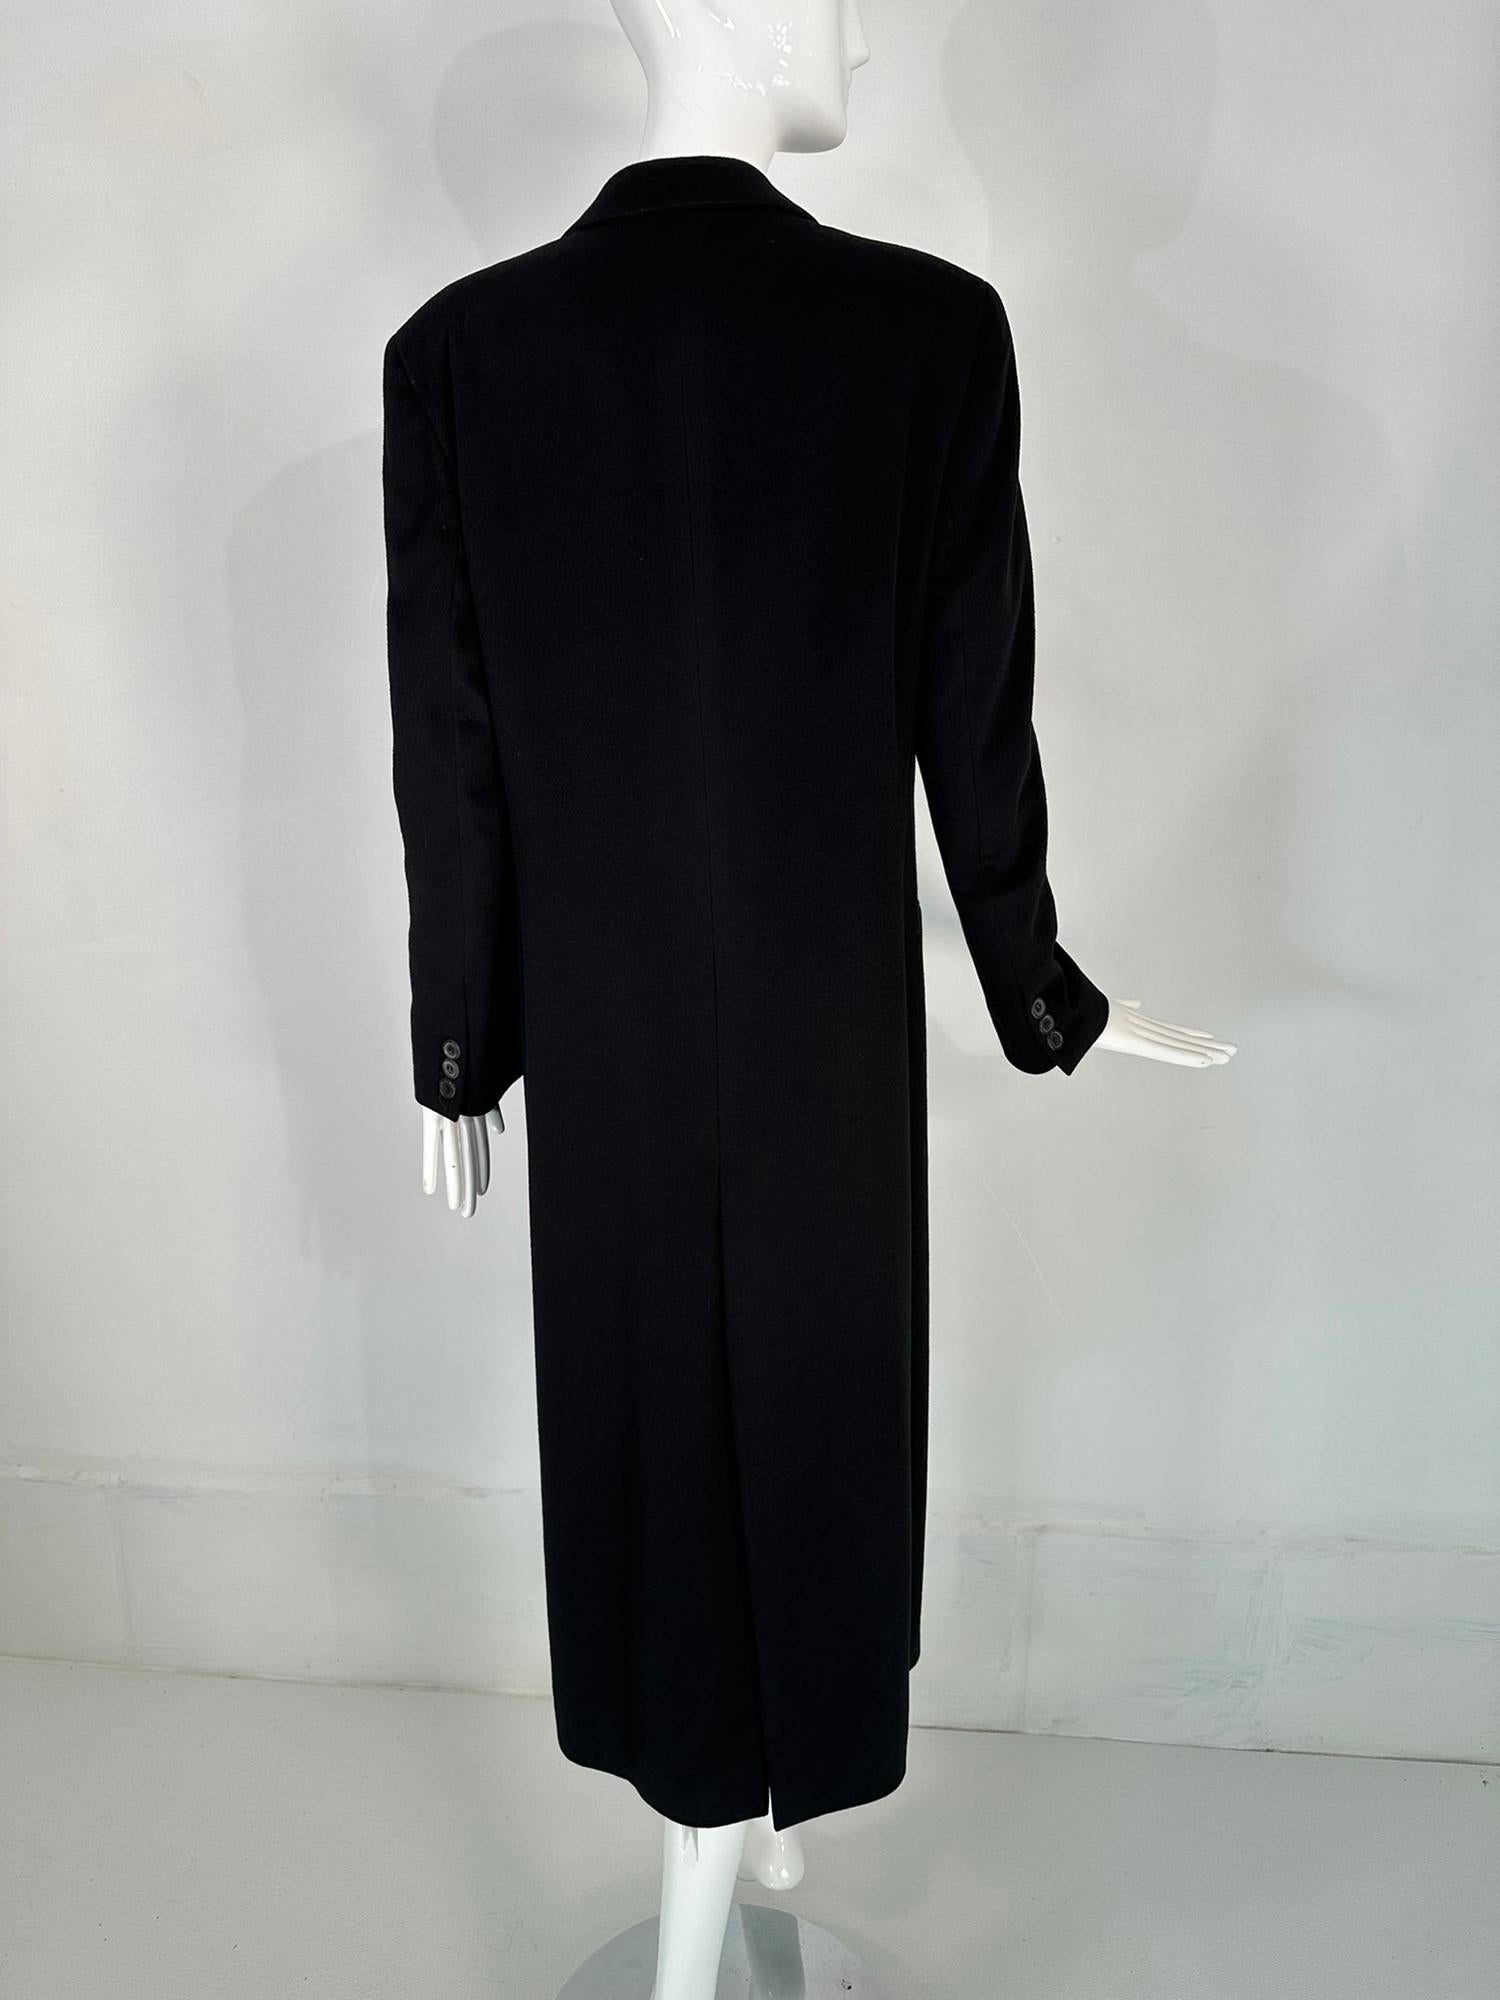 Giorgio Armani Classico Black Label Black Cashmere Double Breasted Winter Coat 3